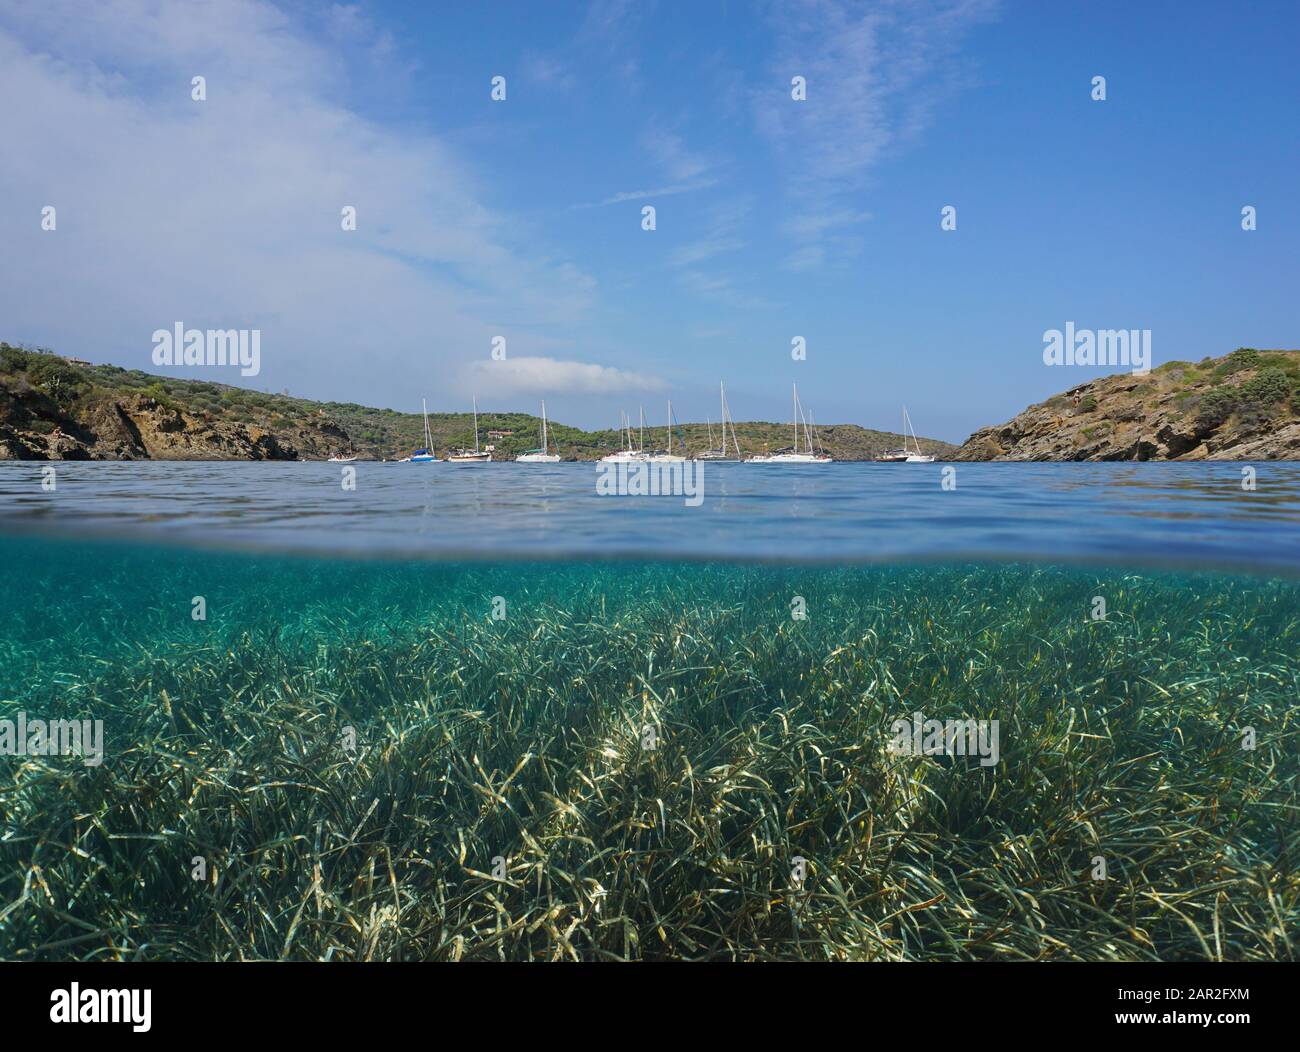 Côte méditerranéenne de la mer avec voiliers amarrés dans une baie et de la mer sous l'eau, vue partagée sur et sous la surface de l'eau, Espagne, Costa Brava Banque D'Images